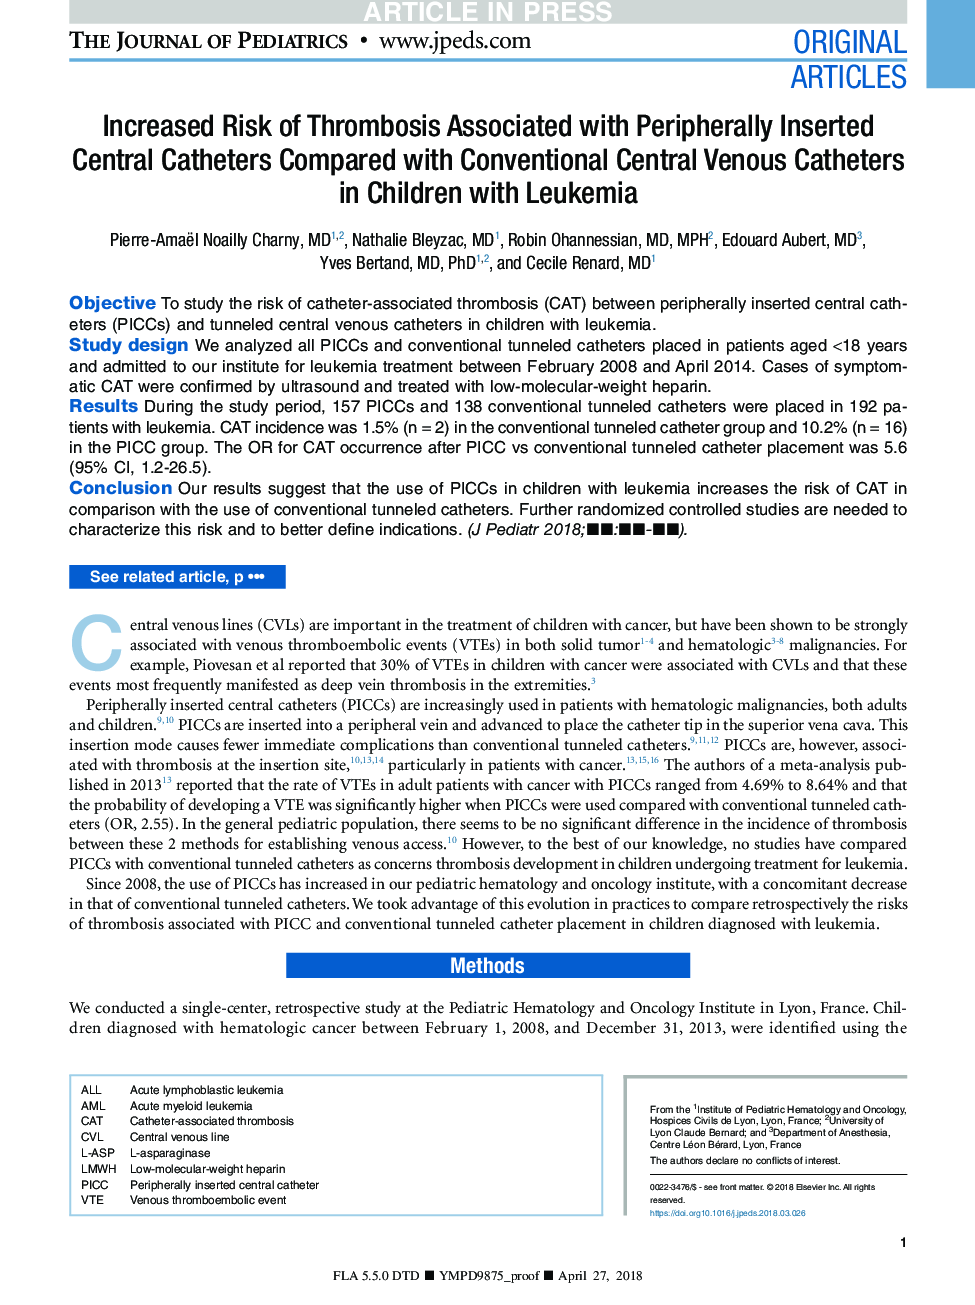 افزایش خطر ابتلا به ترومبوز همراه با کاتترهای مرکزی مورب در مقایسه با کاتترهای وریدی مرکزی در کودکان مبتلا به لوسمی 